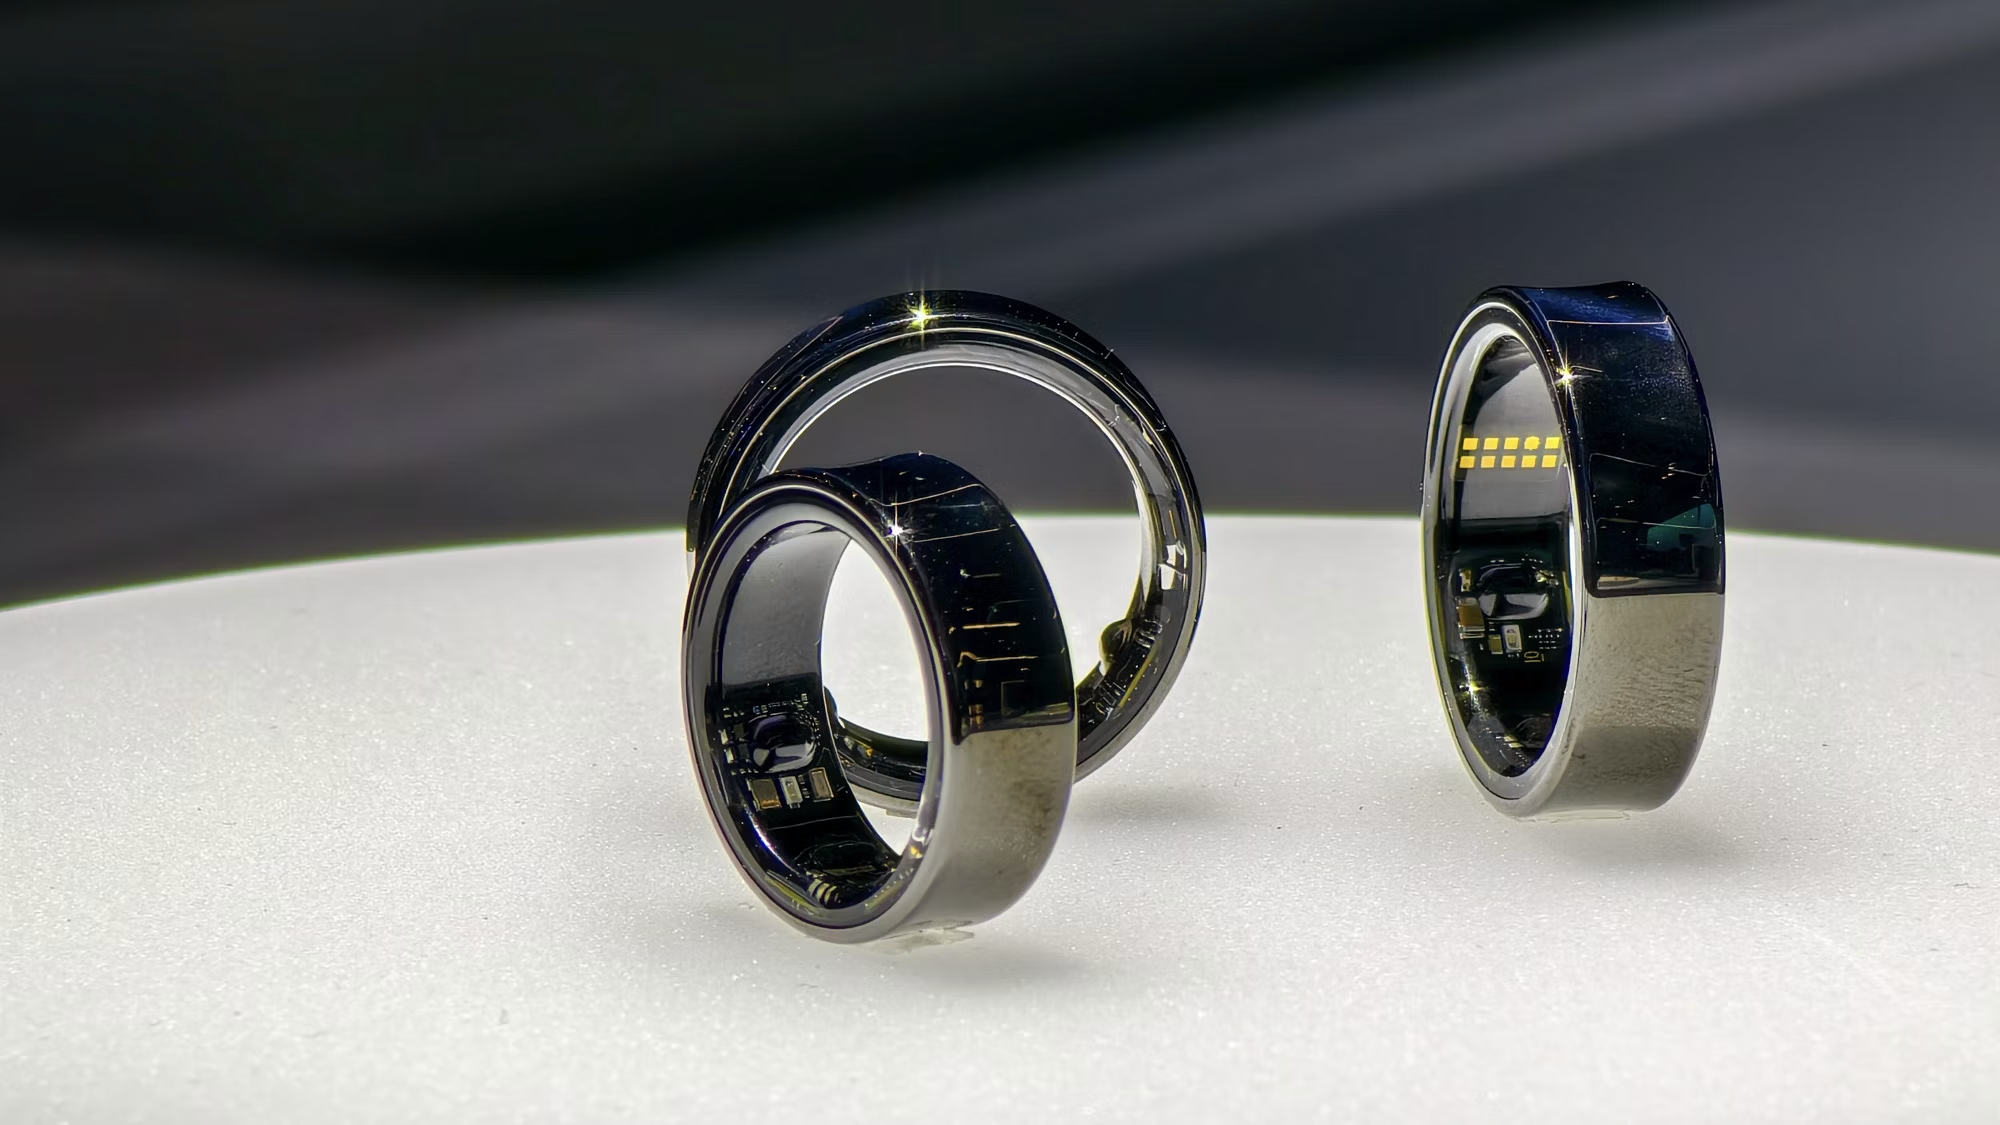 Galaxy Ring: los anillos inteligentes de Samsung que medirán tus  biométricos 24/7